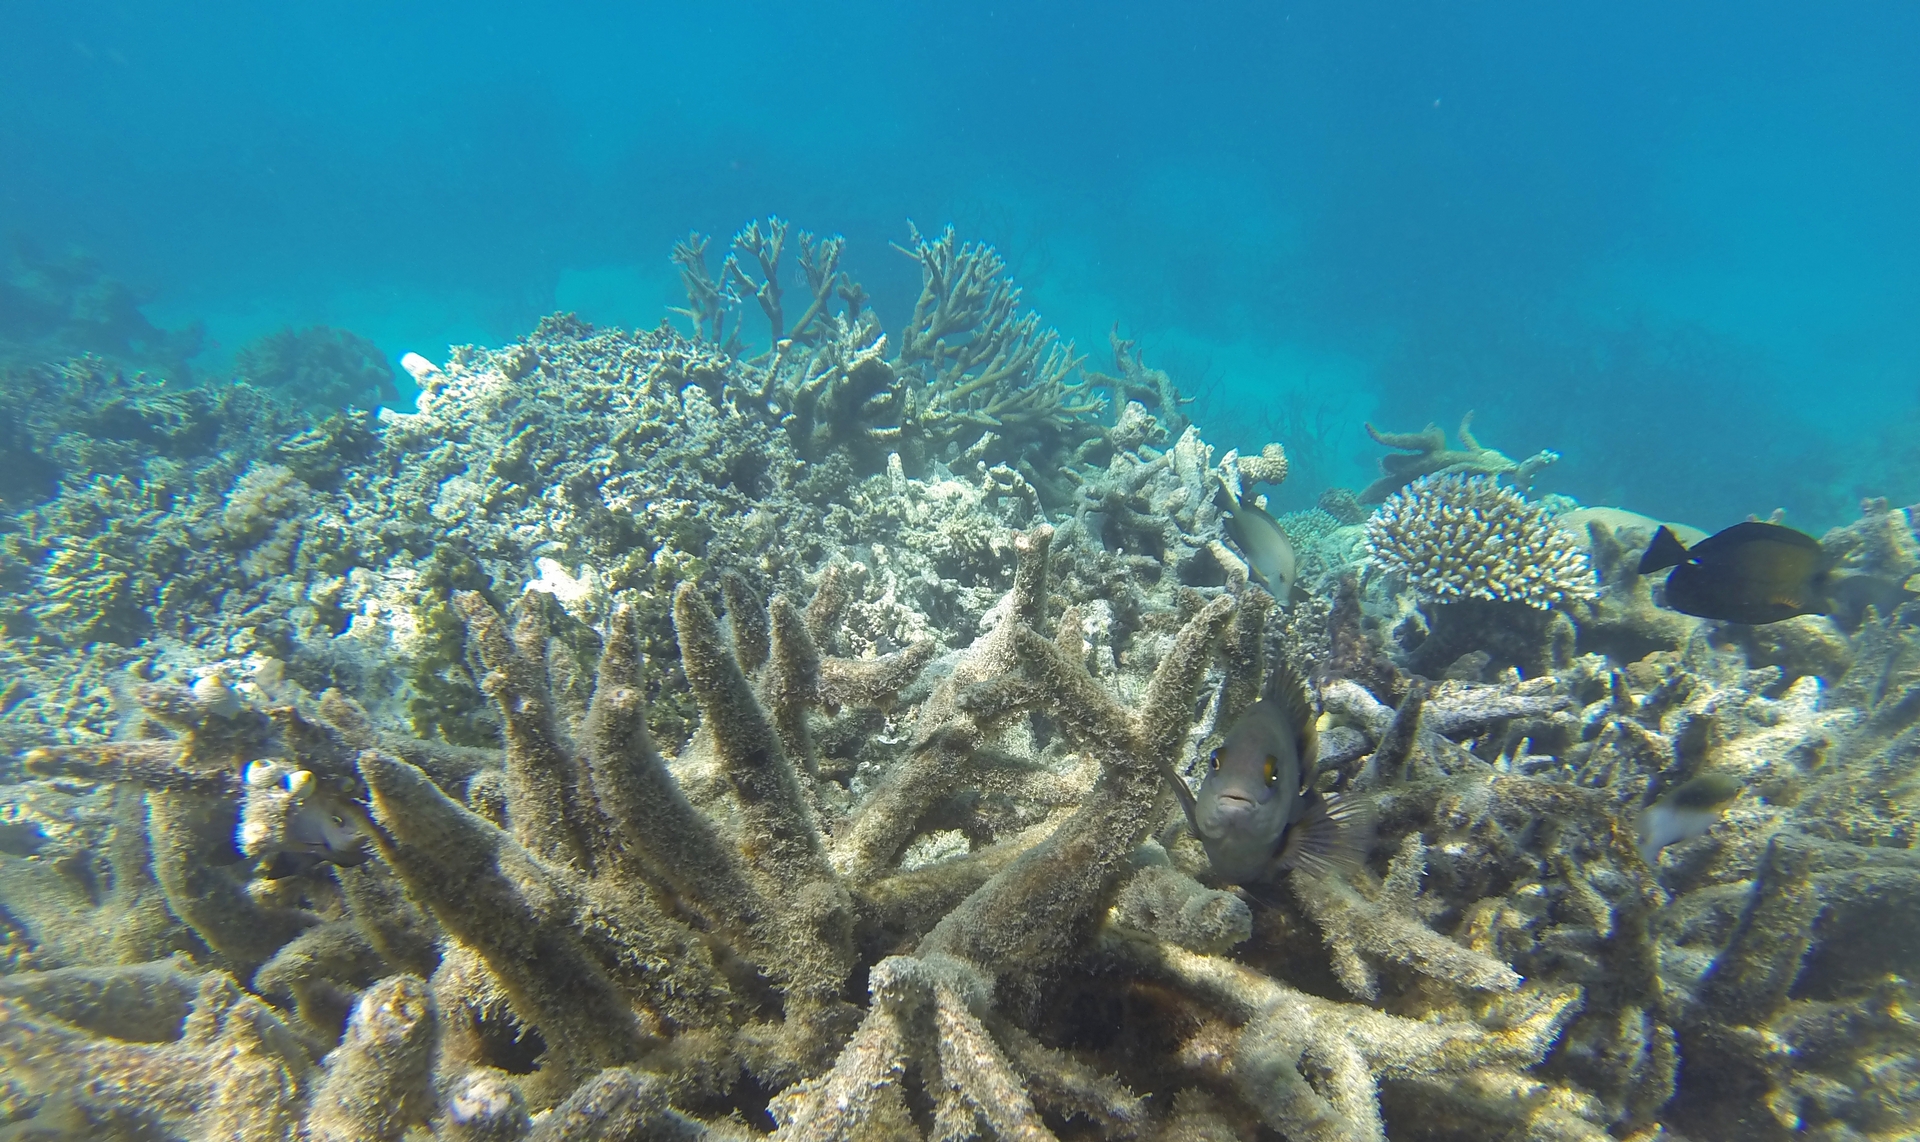 每年14,000噸的防曬乳已造成海洋裡的珊瑚礁白化與死亡。